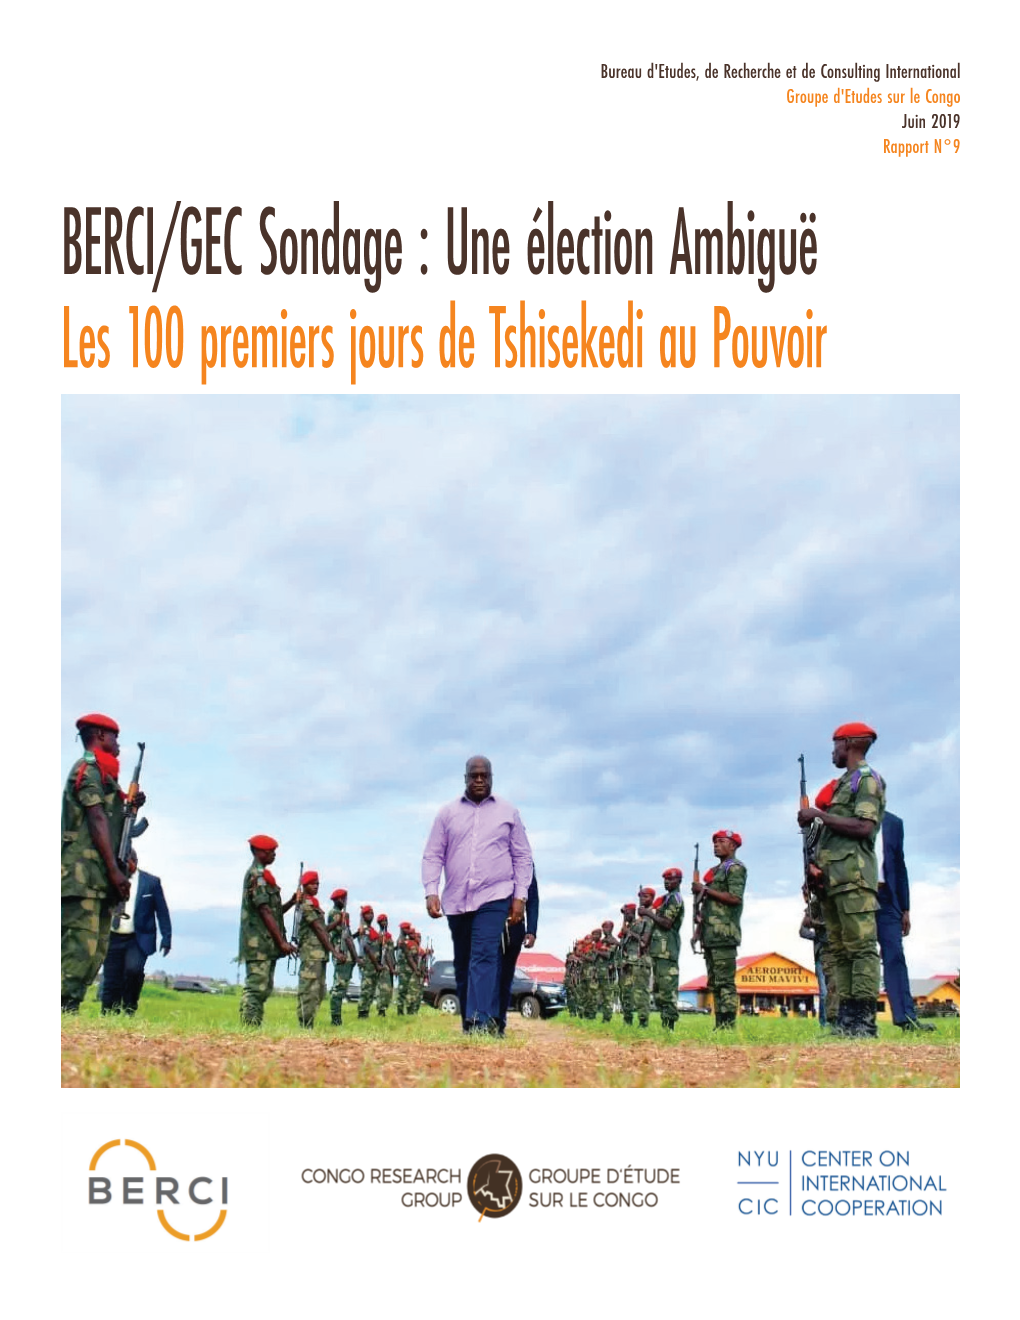 BERCI/GEC Sondage : Une Élection Ambiguë Les 100 Premiers Jours De Tshisekedi Au Pouvoir Le Désespoir Gagne De Plus En Plus Les Cœurs “ Des Congolaises Et Congolais